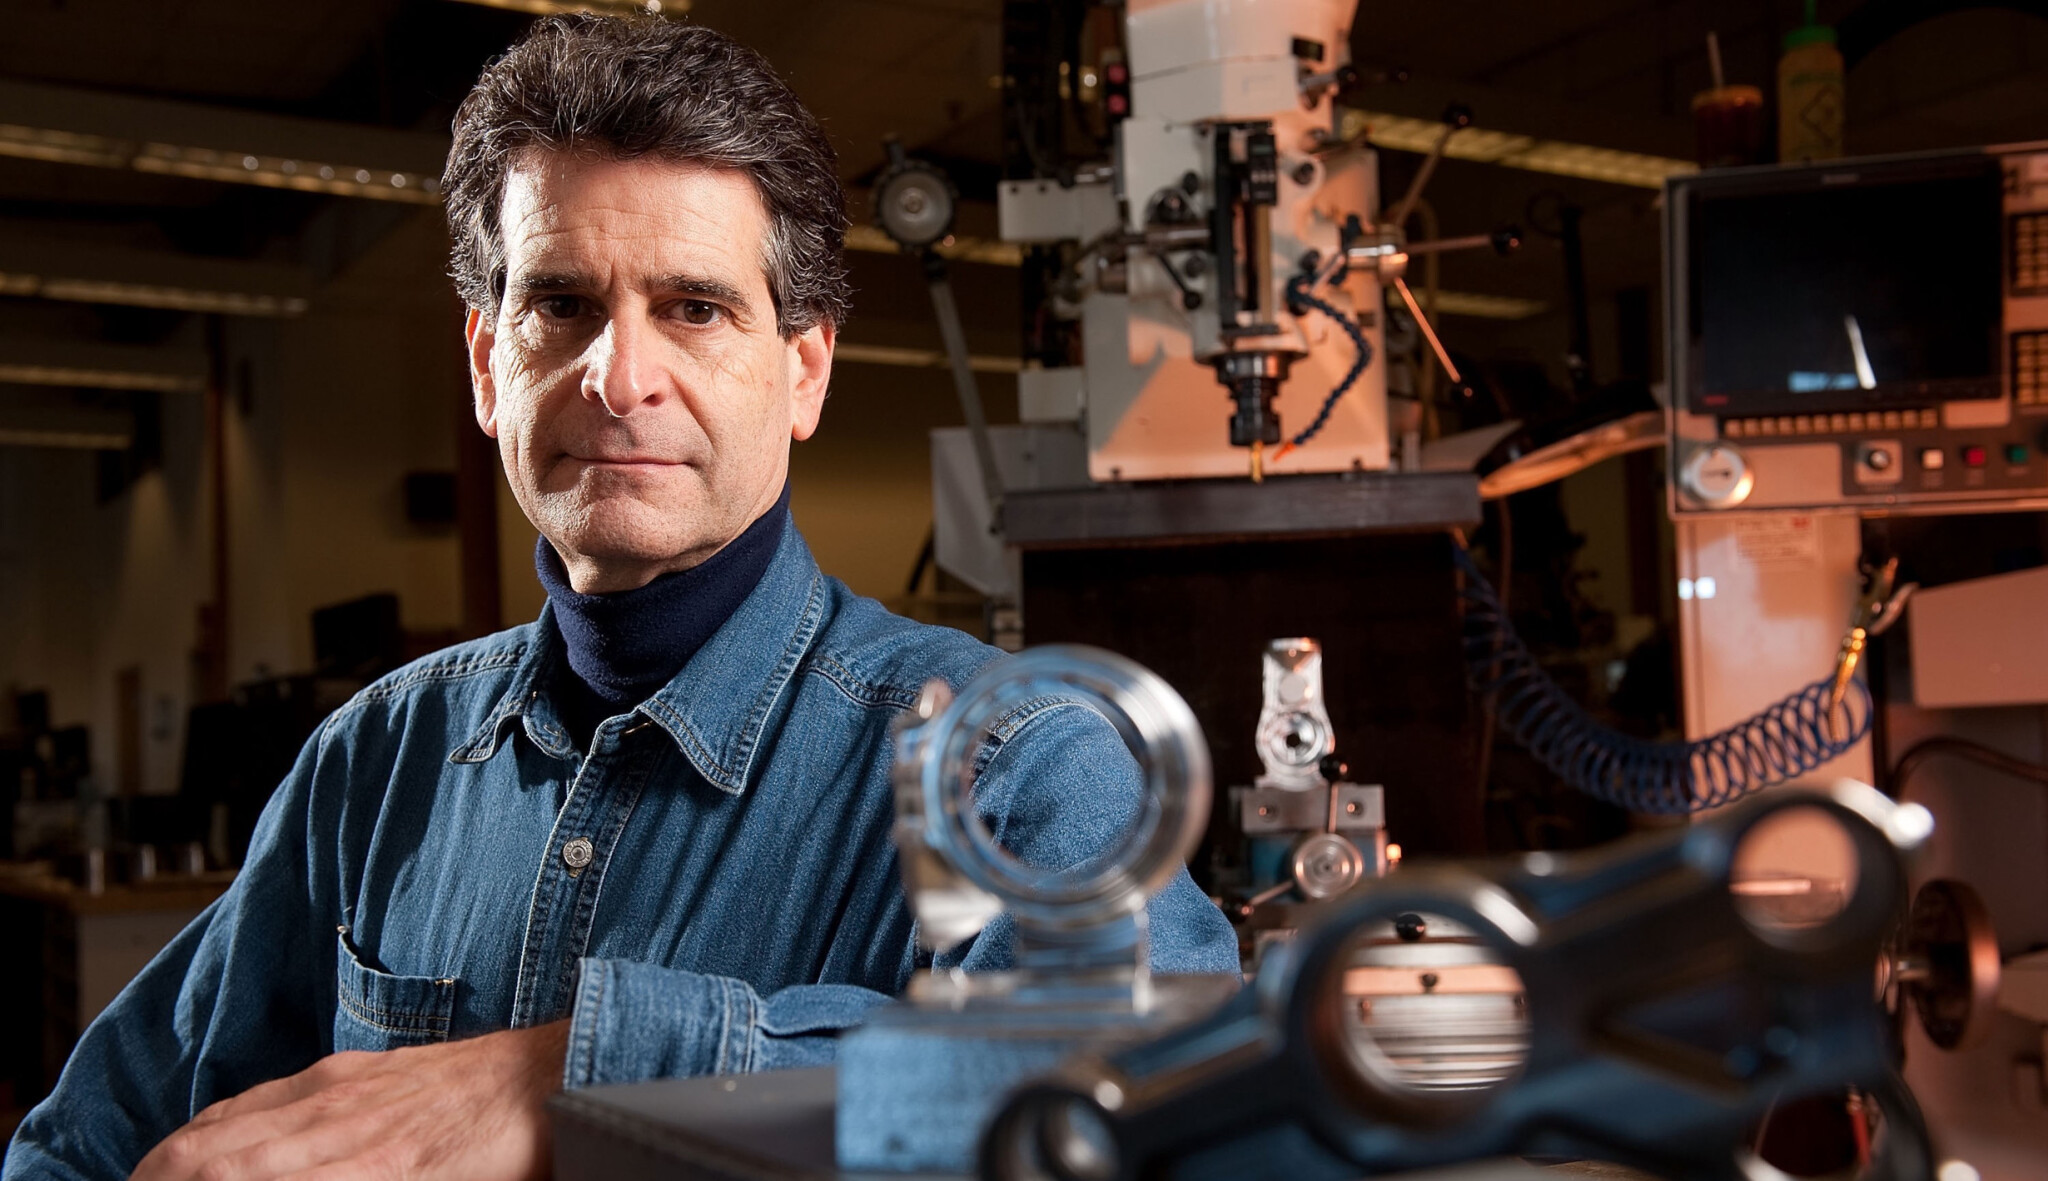 Vynalezl segway i první robotickou ruku. Teď Dean Kamen chystá továrnu na lidské orgány